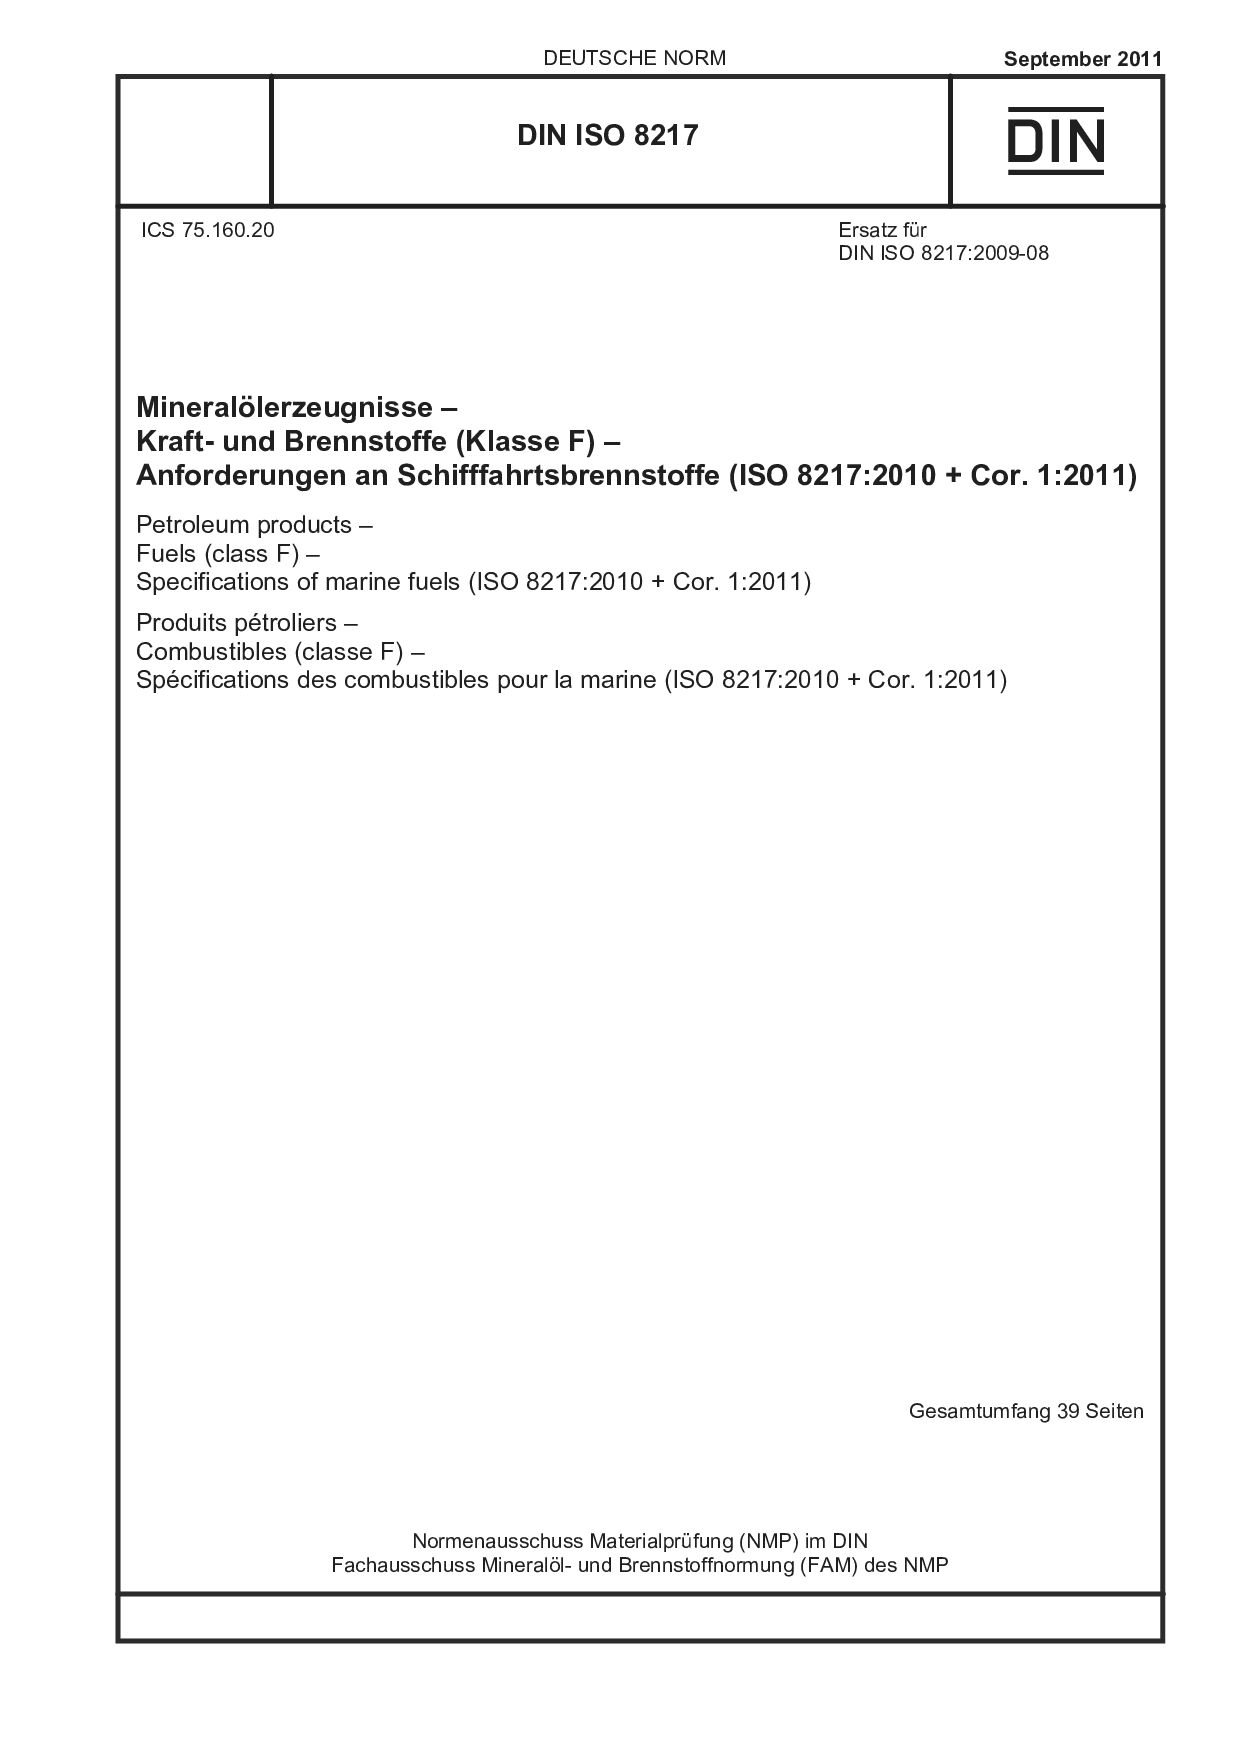 DIN ISO 8217:2011封面图